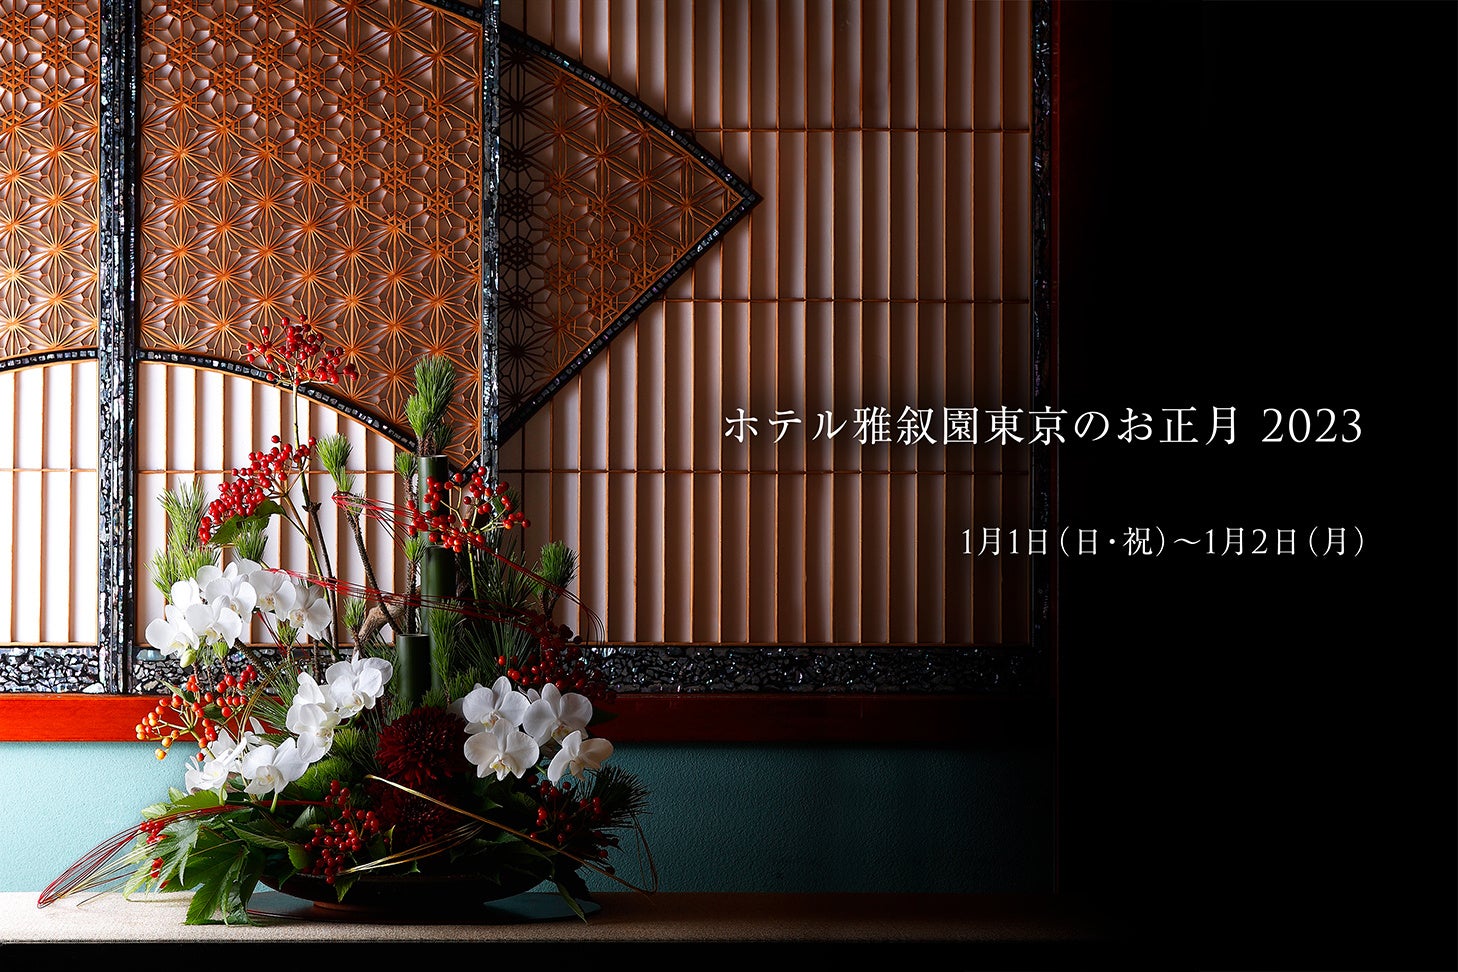 【ホテル雅叙園東京のお正月2023】日本の伝統や美意識を未来につなぐワークショップや新春ブッフェを開催